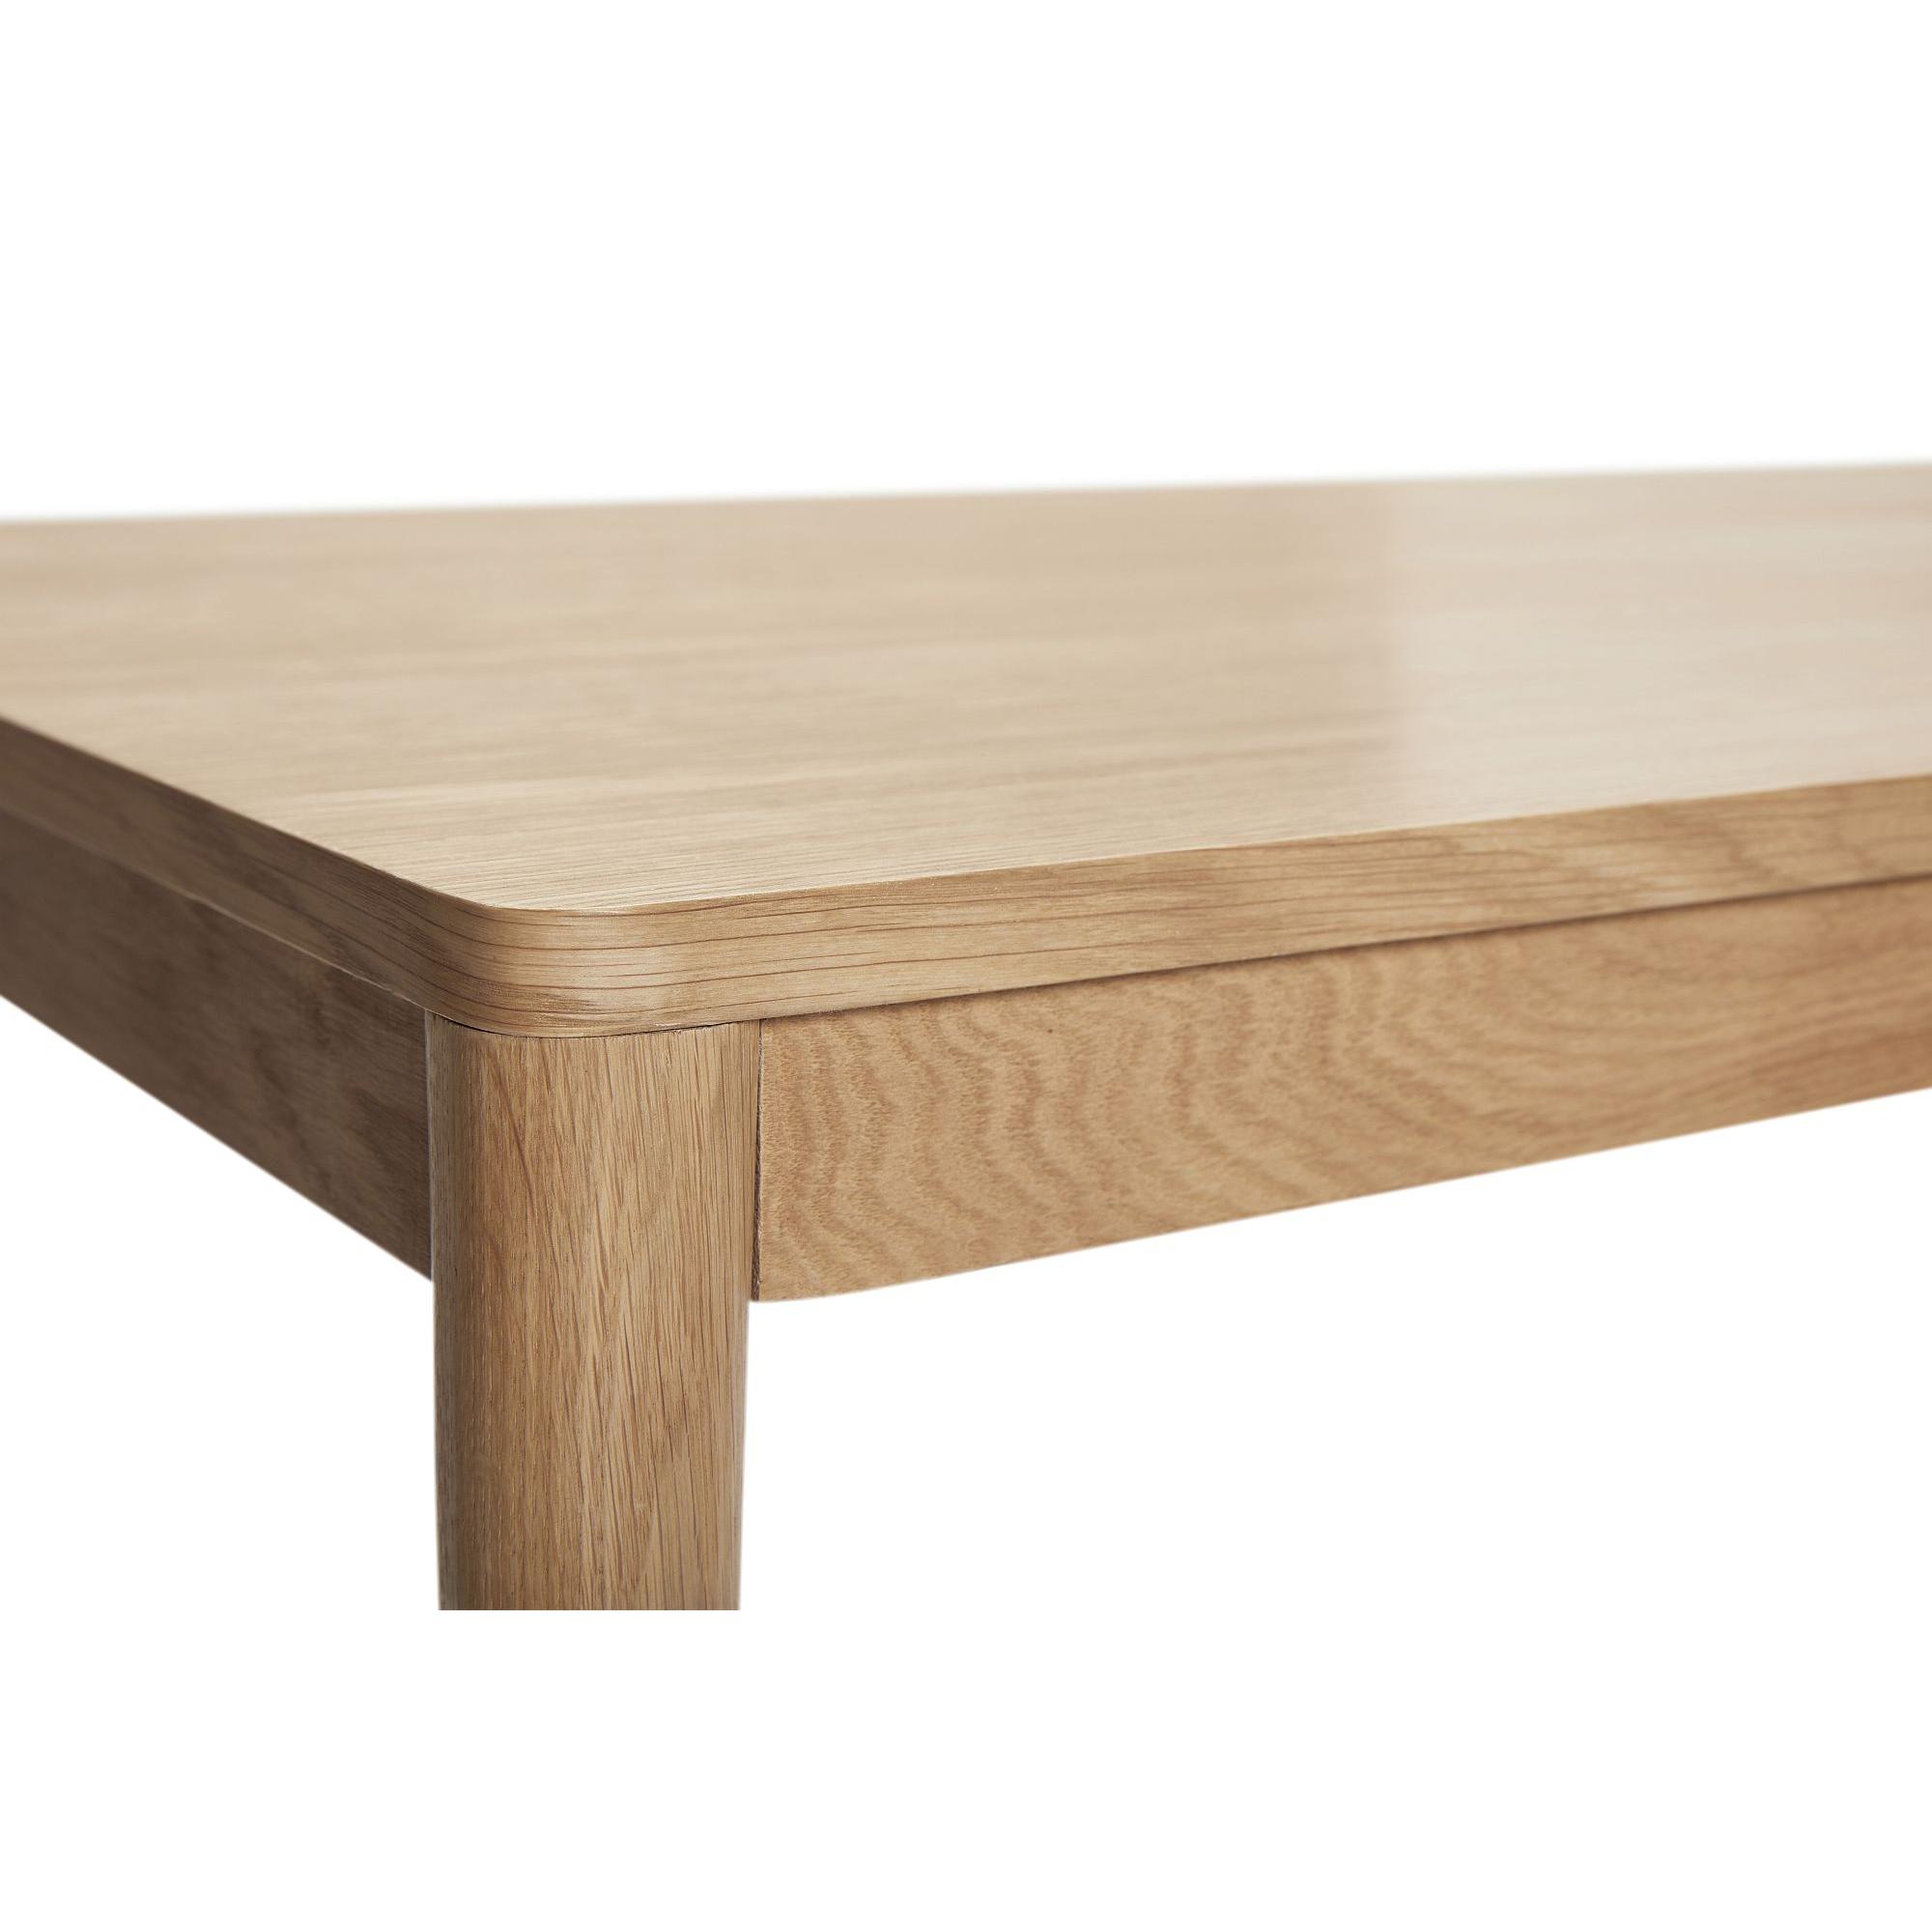  Acorn - Spisebord i egetræ 140 cm. fra Hübsch Interiør i Egetræ, Egefinér (Varenr: 880705)